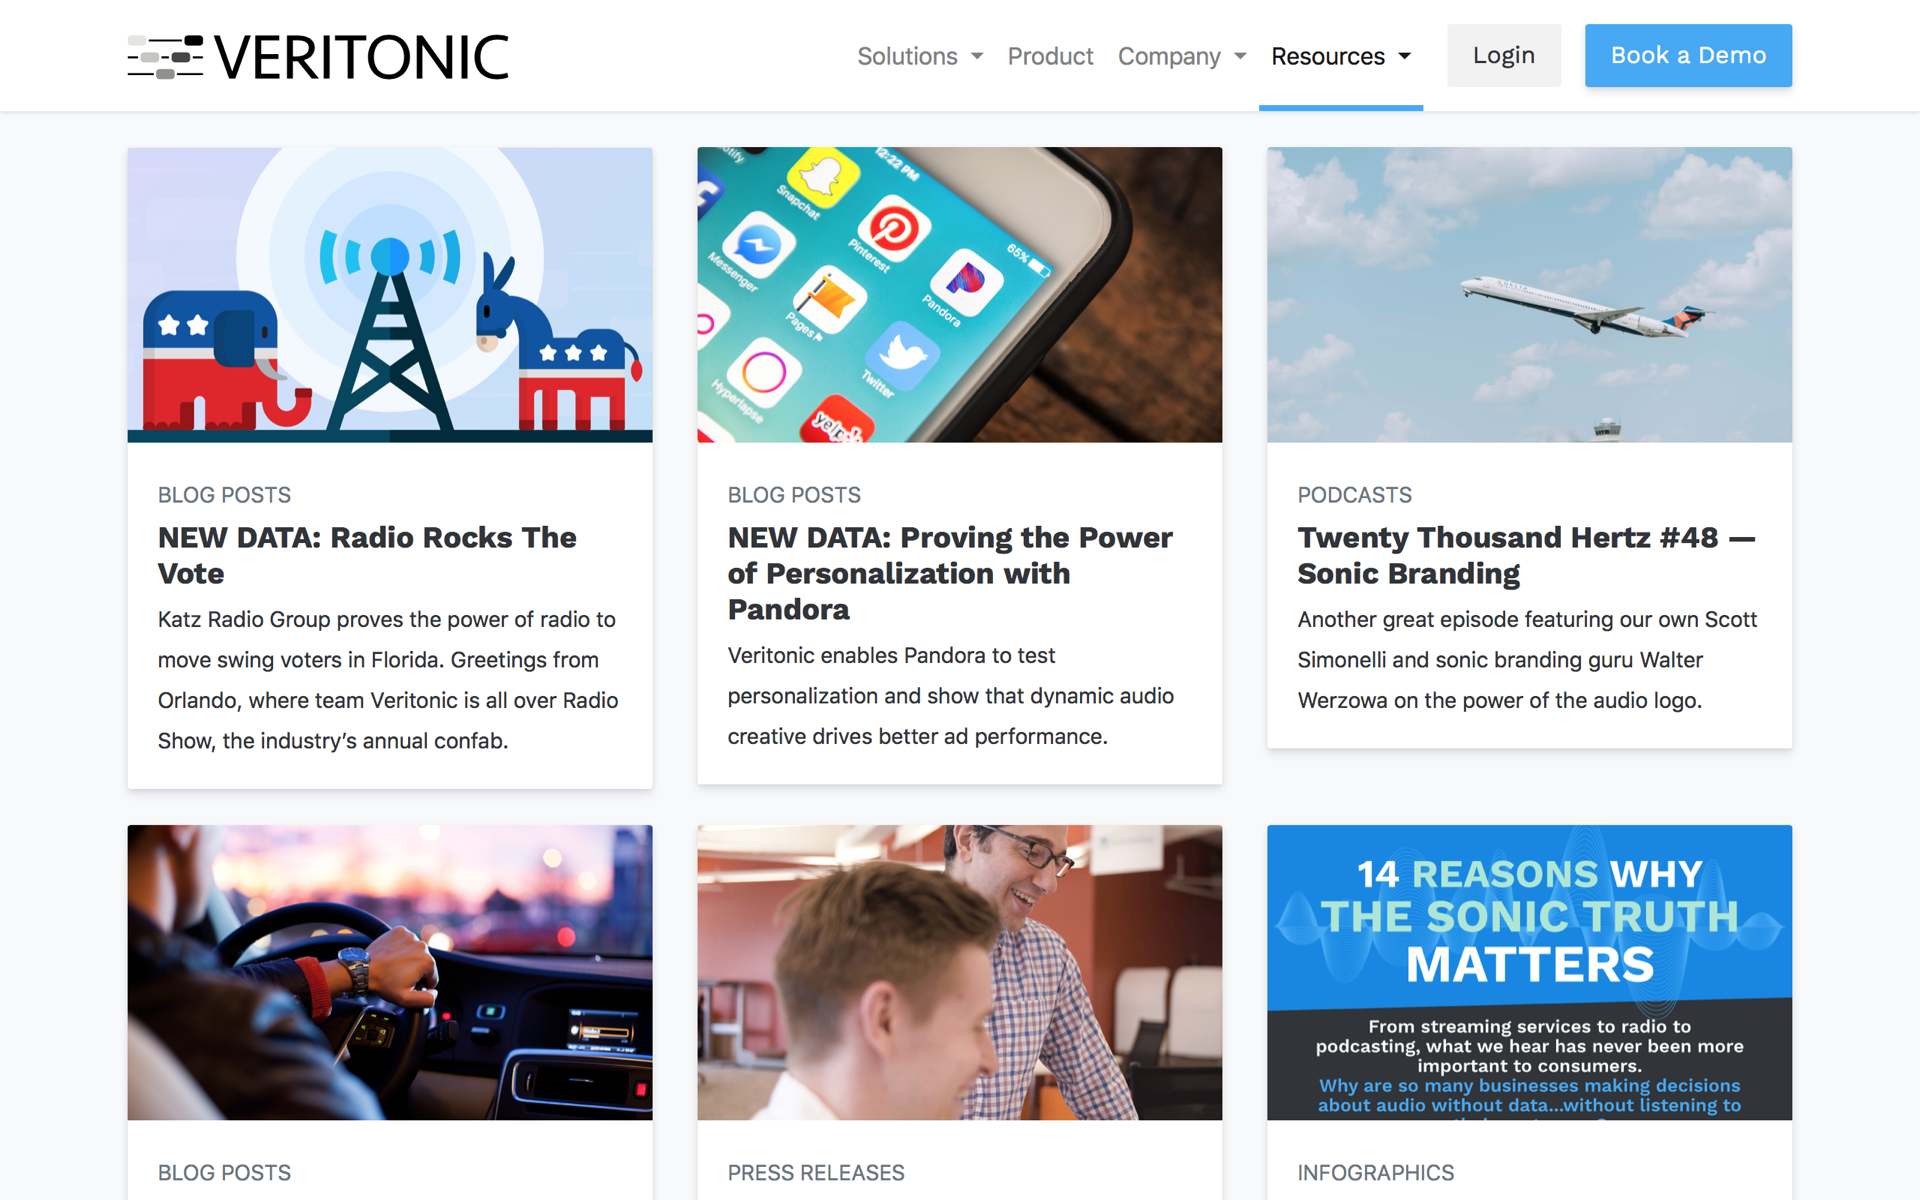 Veritonic featured content page designed by Matt Gagliano